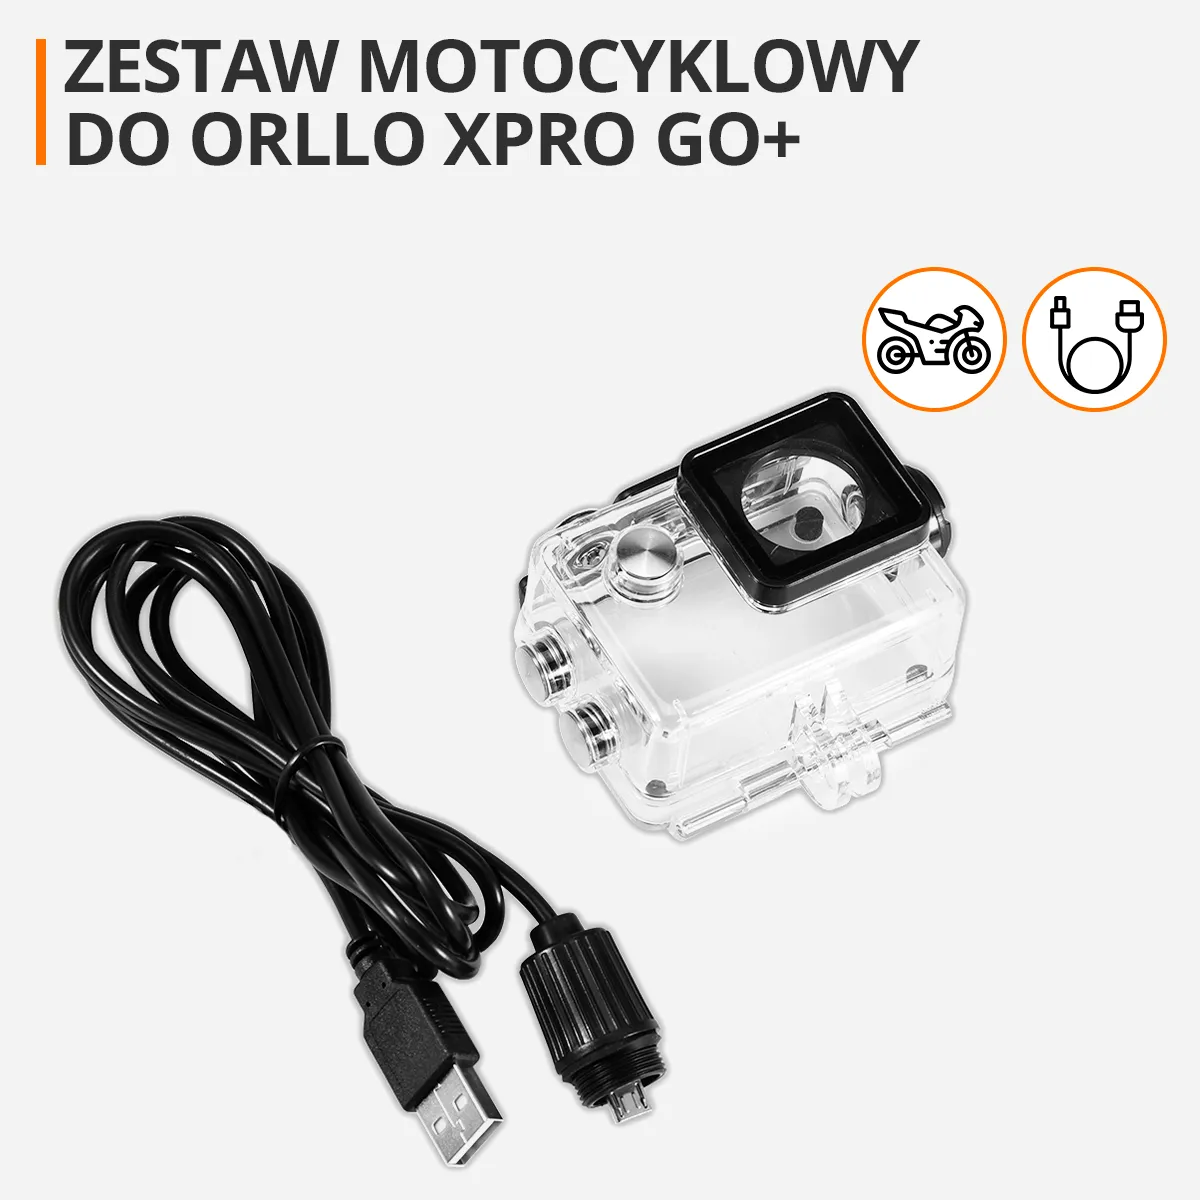 zestaw-motocyklowy-do-kamery-sportowej-orllo-xpro-go-+